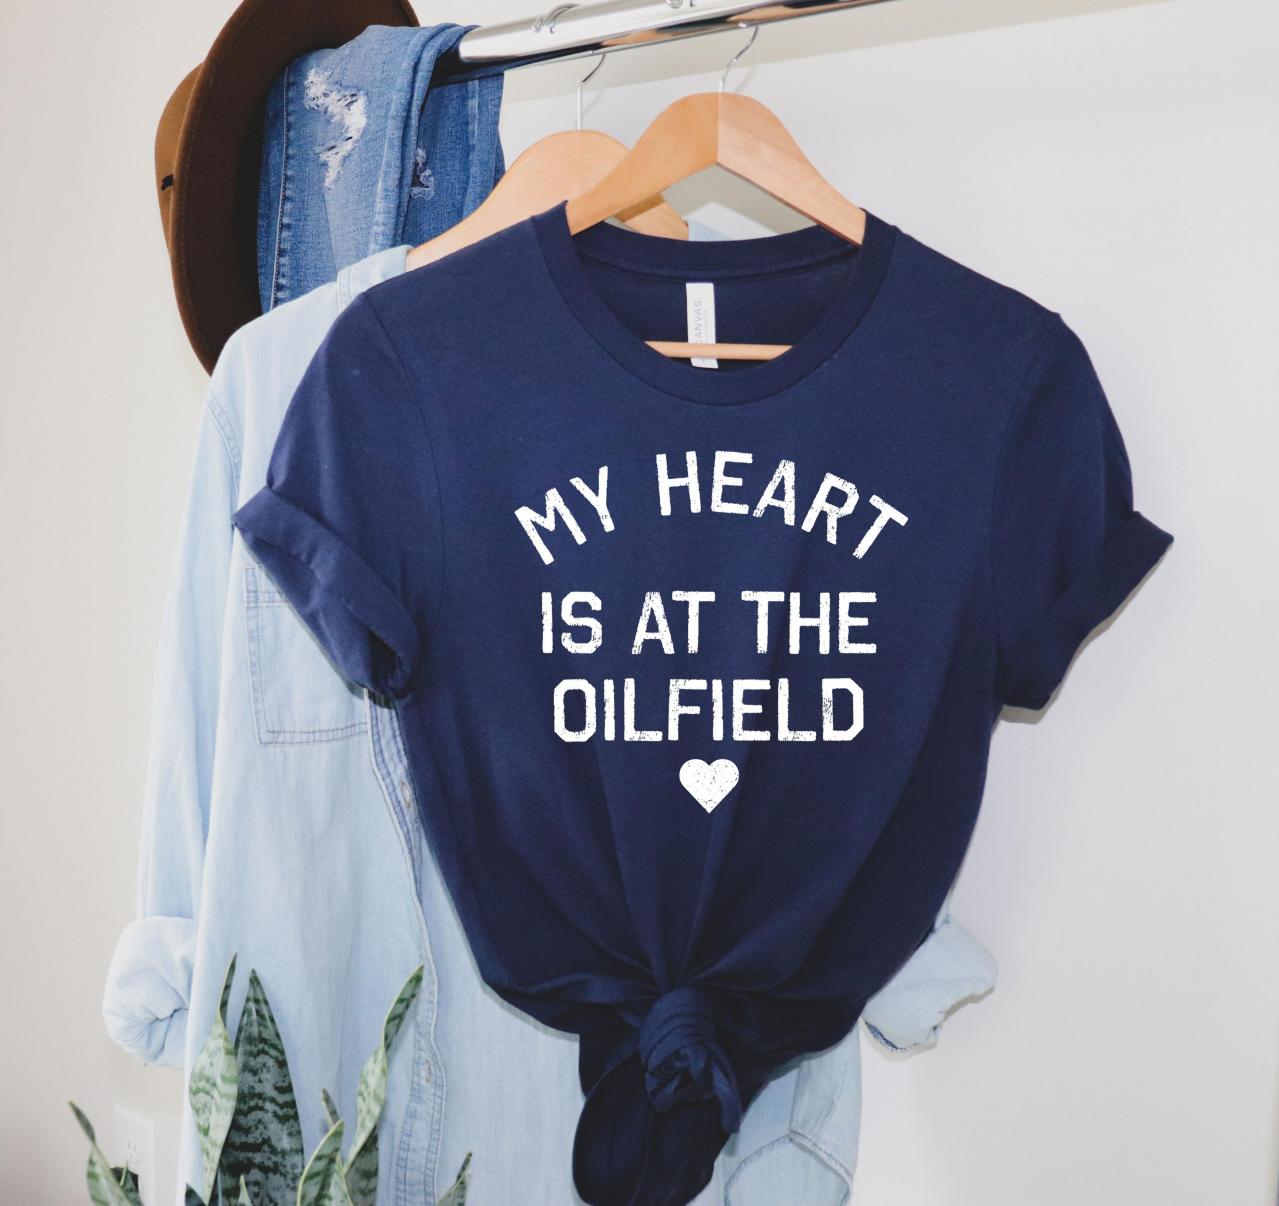 Wife Of Oilfield Worker Gift, Oilfield Girlfriend Shirt, Oilfield Gift, Pipeliner Shirt, My Heart Is At The Oilfield, Oil Rig Shirt, Oilfield